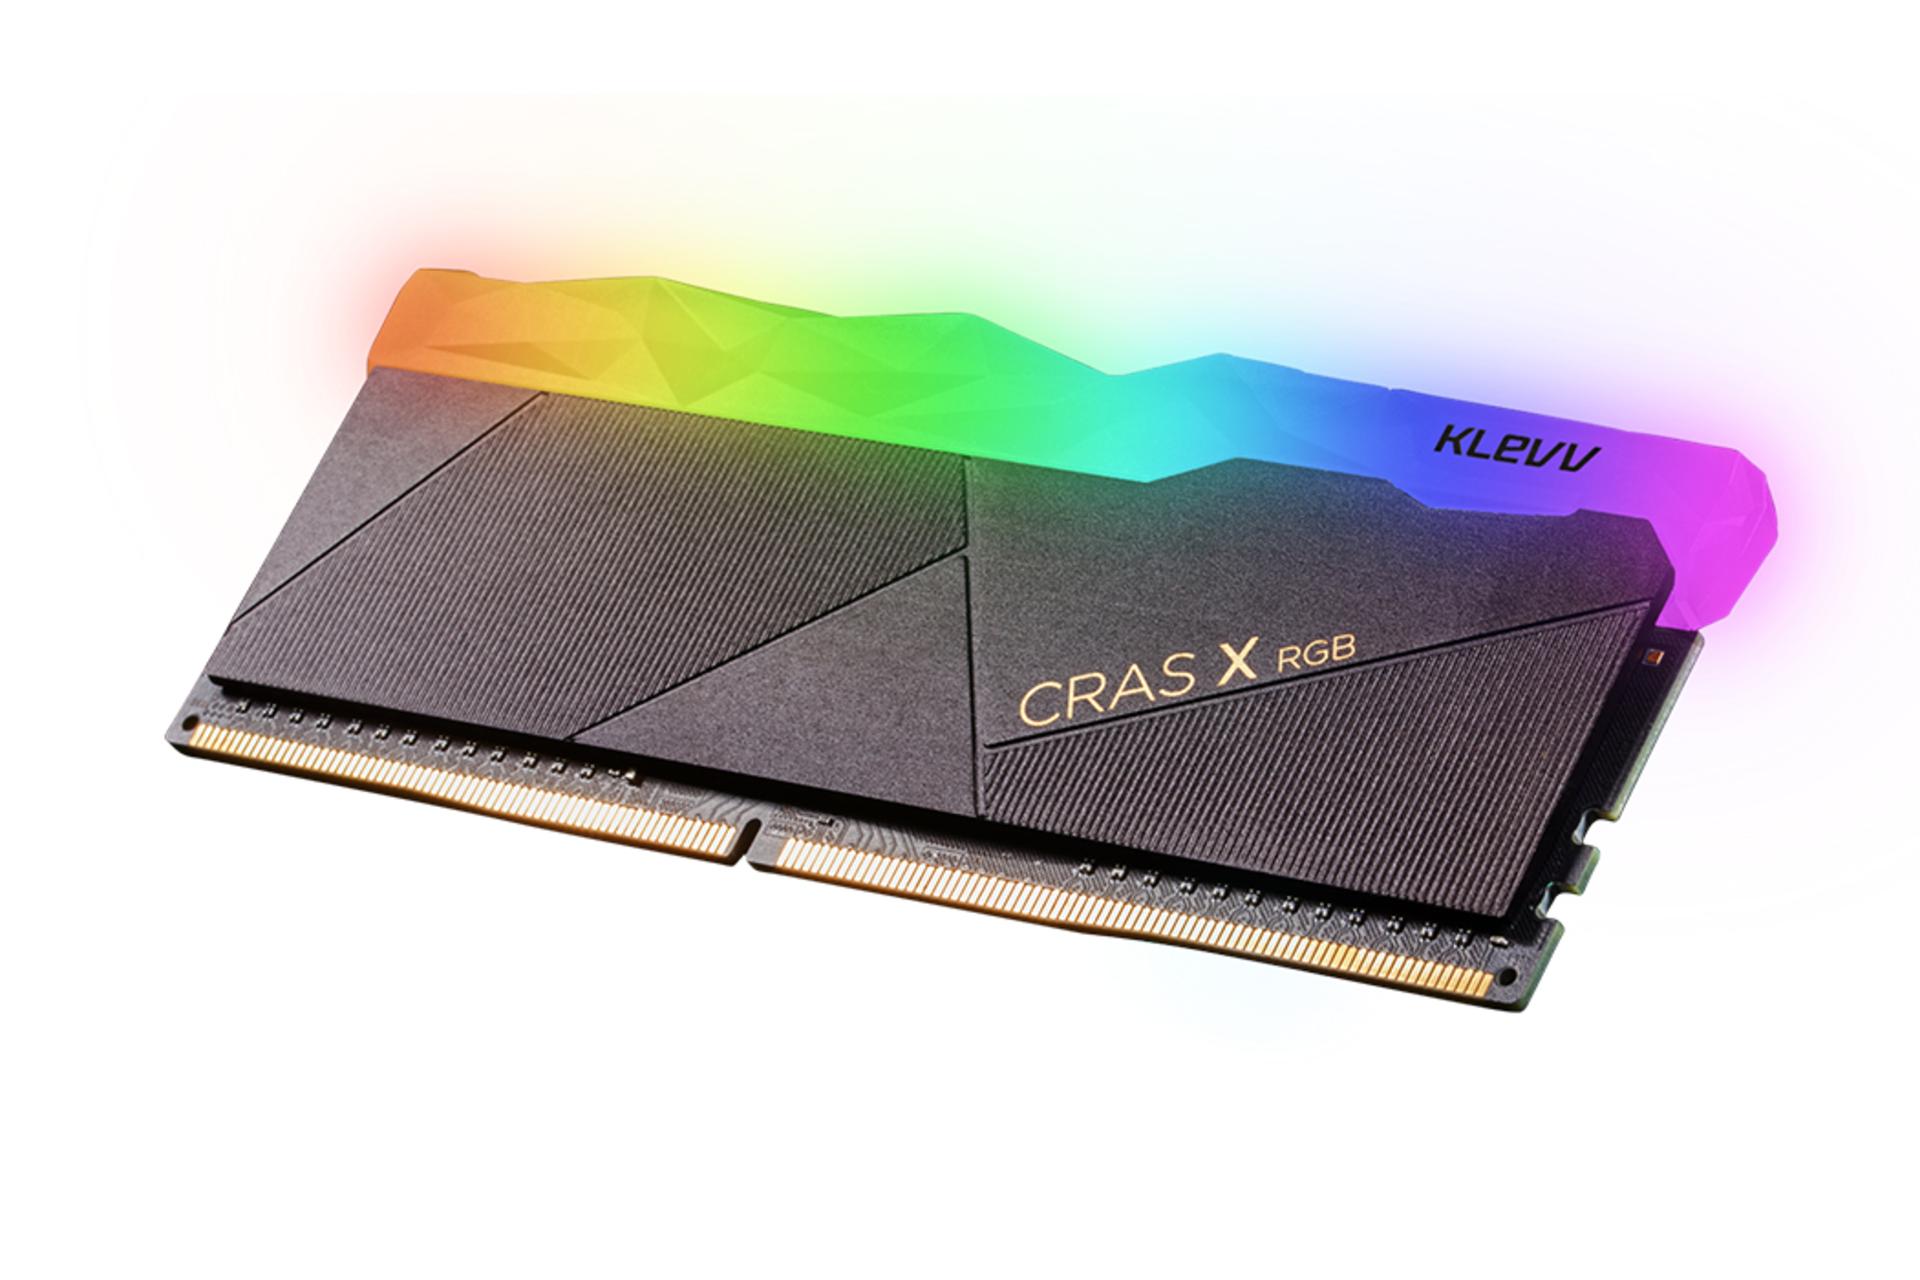 klevv Cras X RGB ظرفیت 16 گیگابایت (2x8) از نوع DDR4-3200 نمای جانبی2